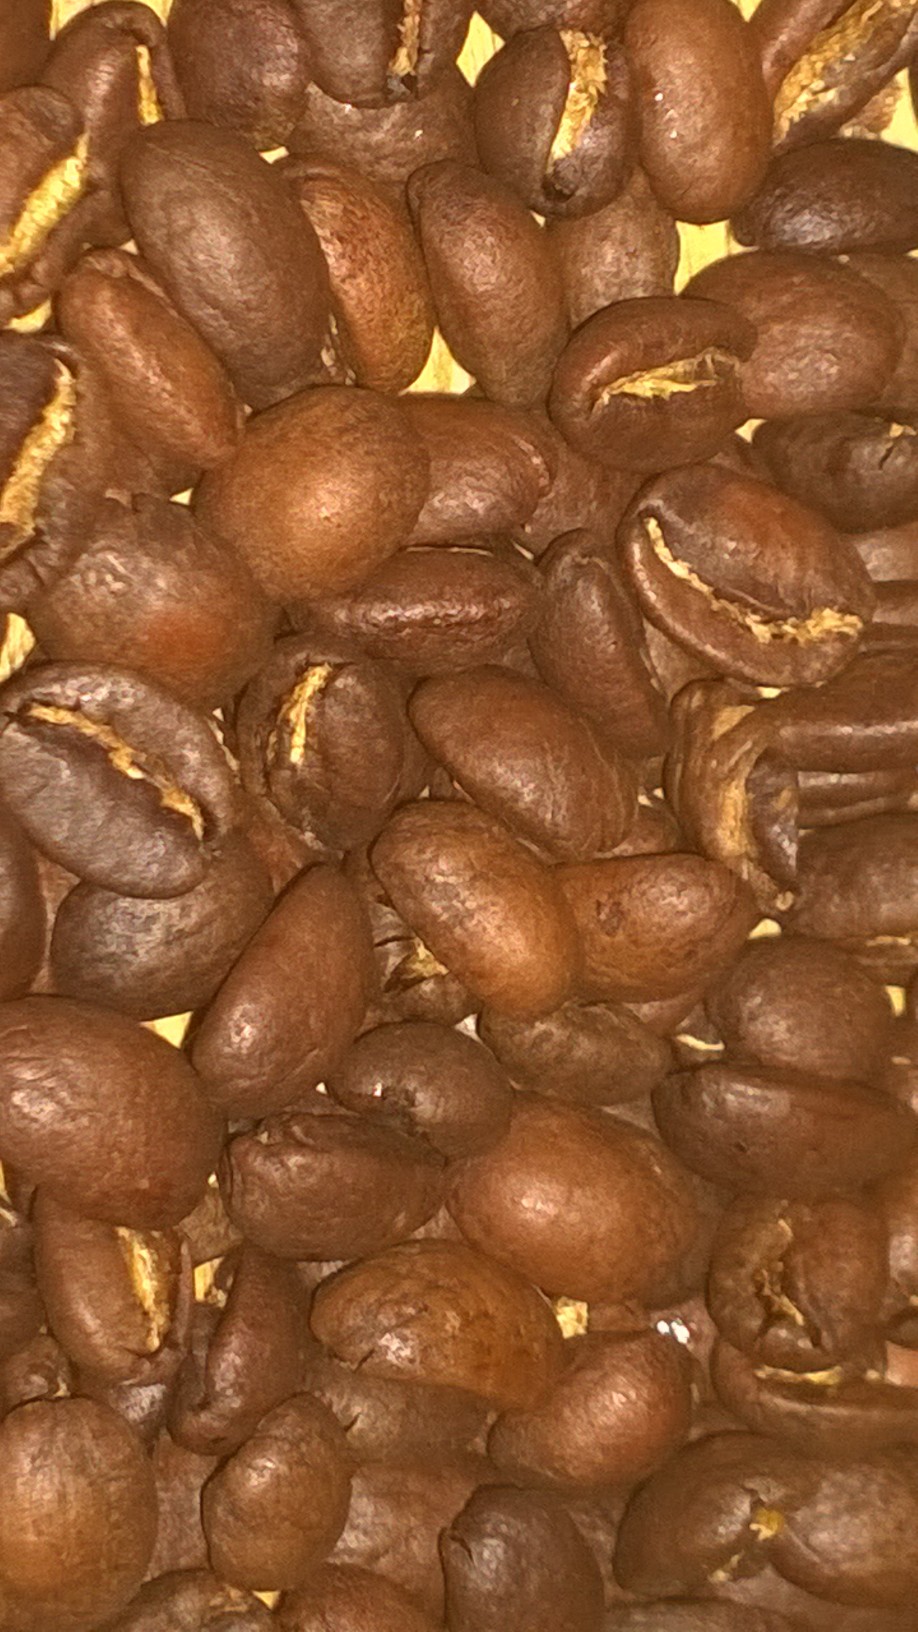 Roasted Coffee Beans Panama Lerida Estate Catuai Natural Process 5 Pounds